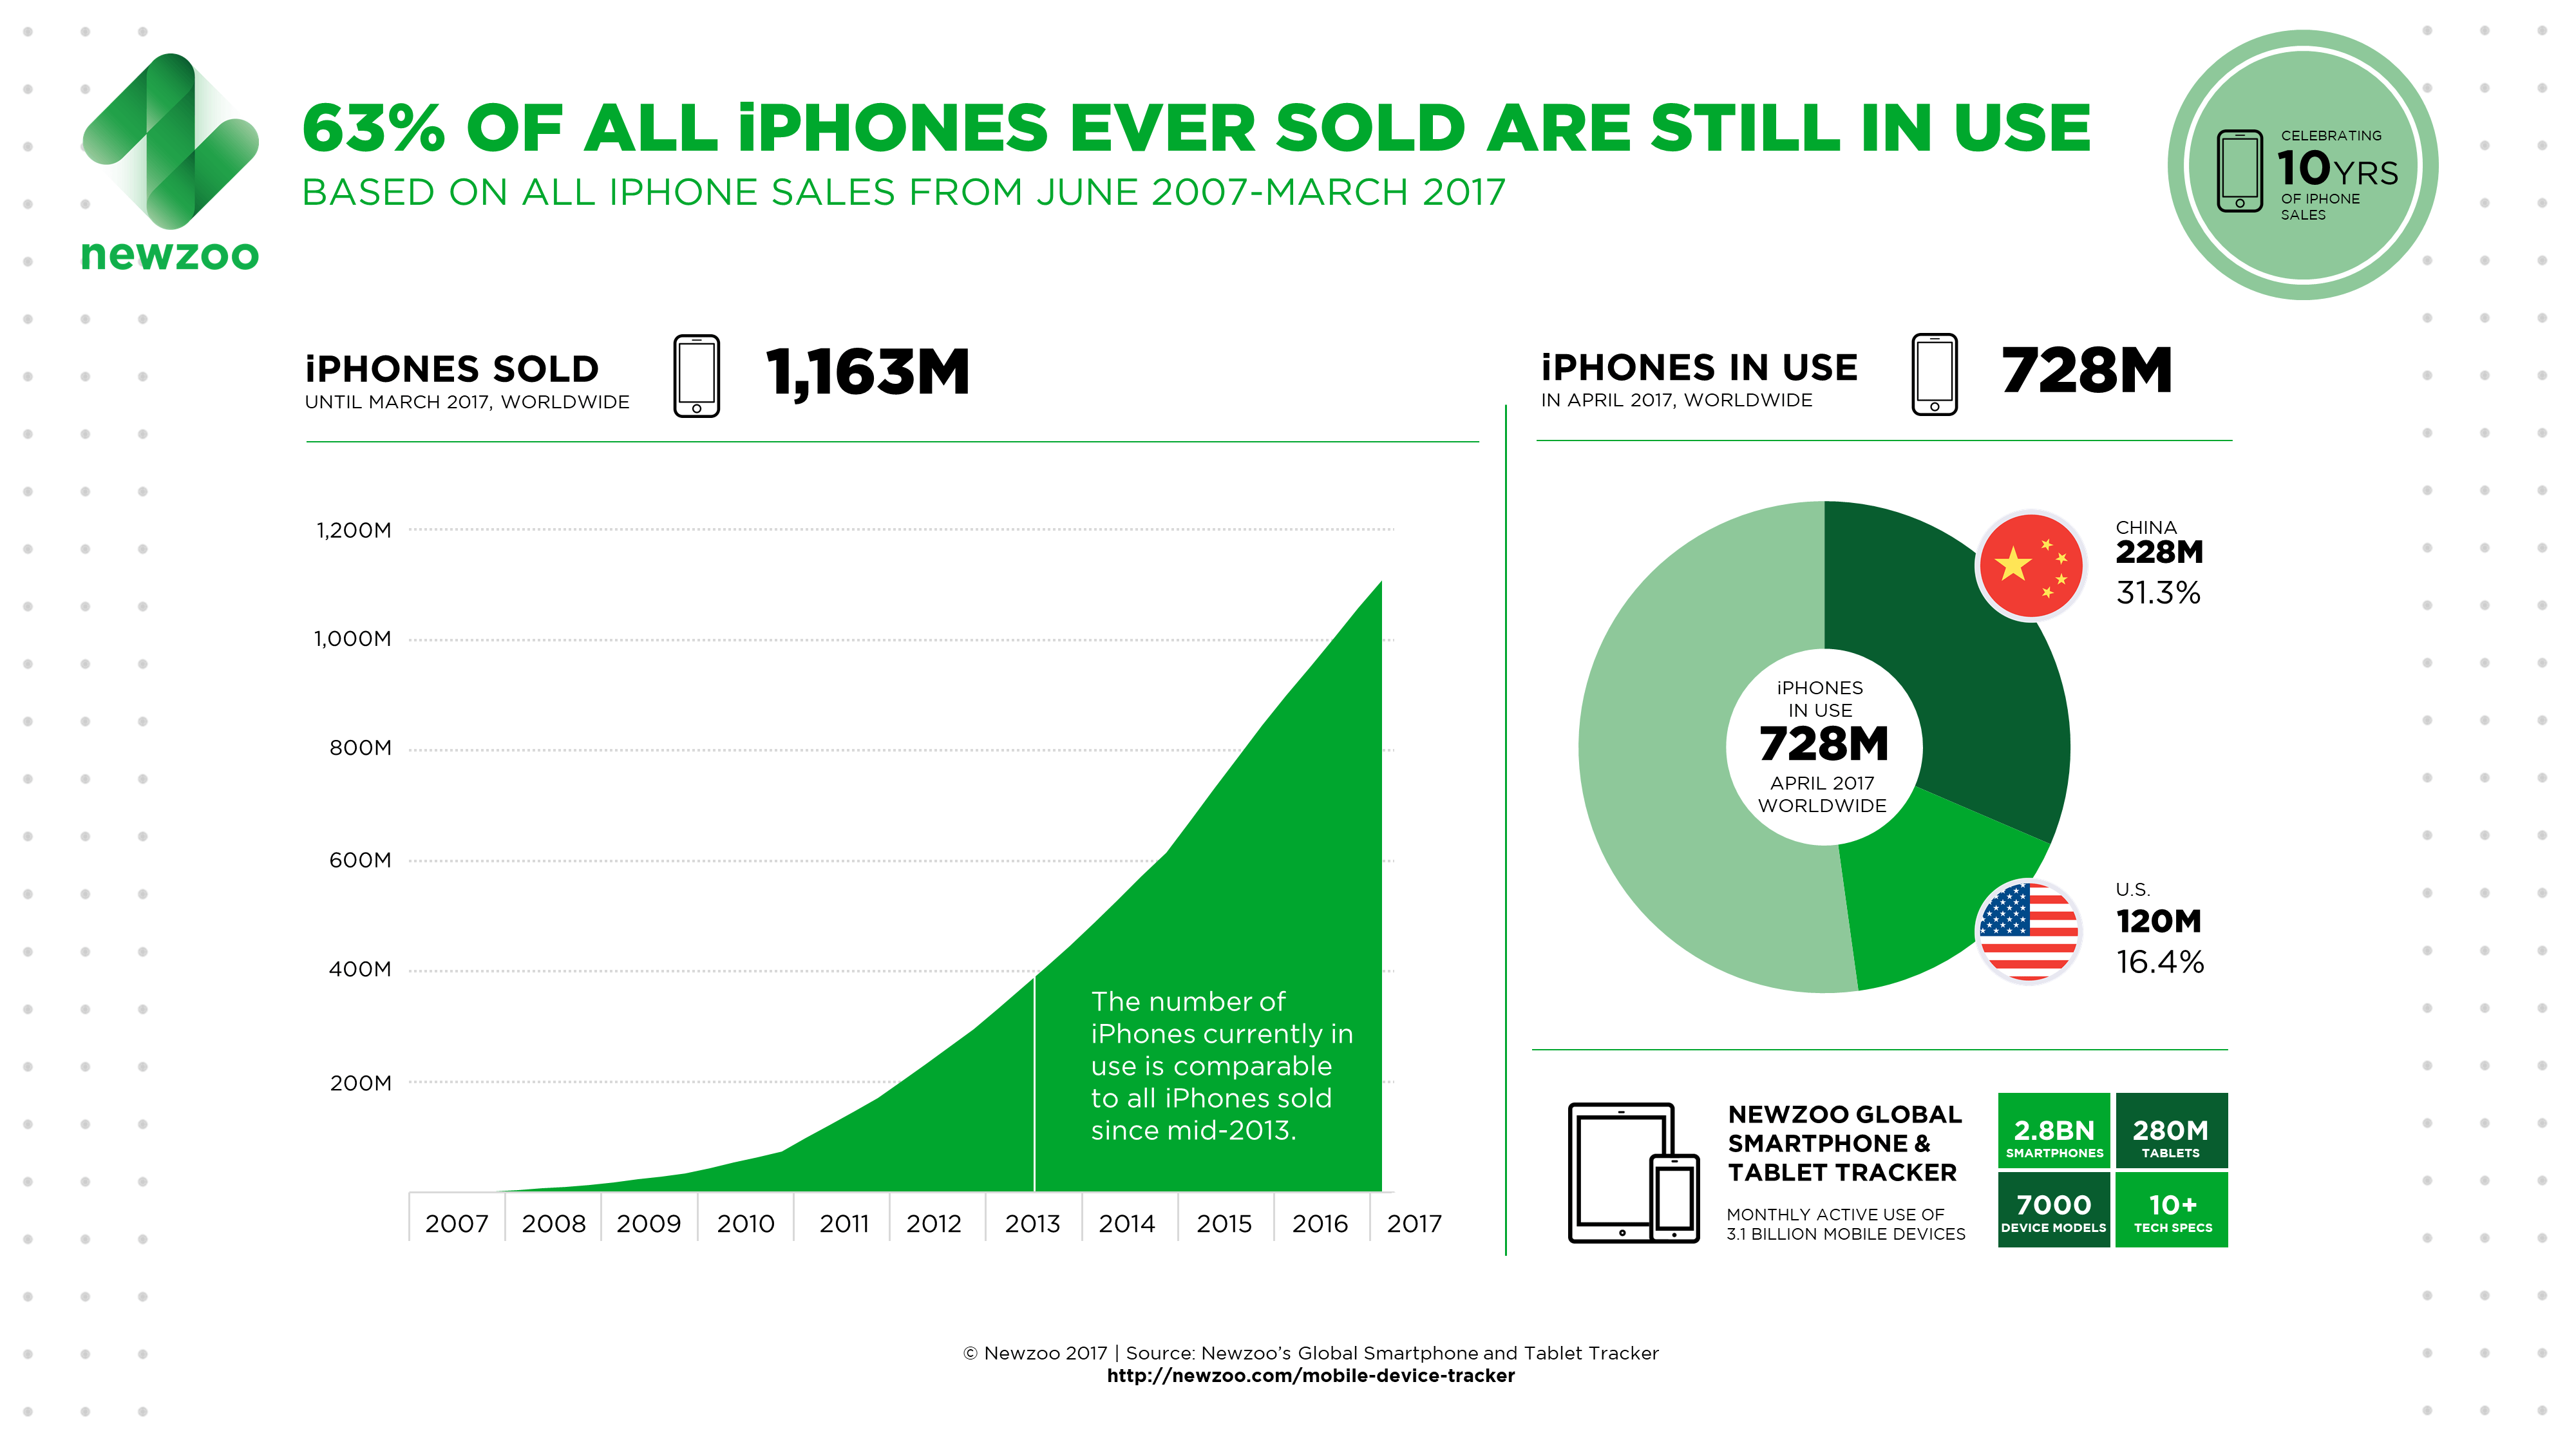 63% procent van alle verkochte iPhones zijn nog in gebruik